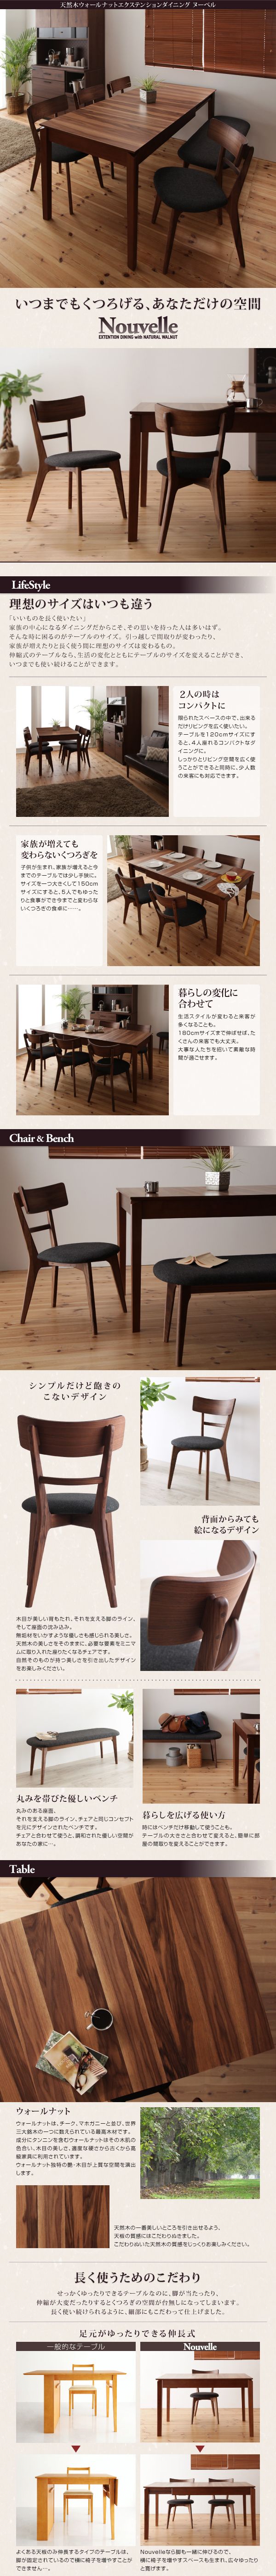 【通販安心】■Nouvelle 単品 テーブル(W120-150-180) 天然木ウォールナットエクステンションダイニング [ヌーベル] 背面からみても絵になる その他